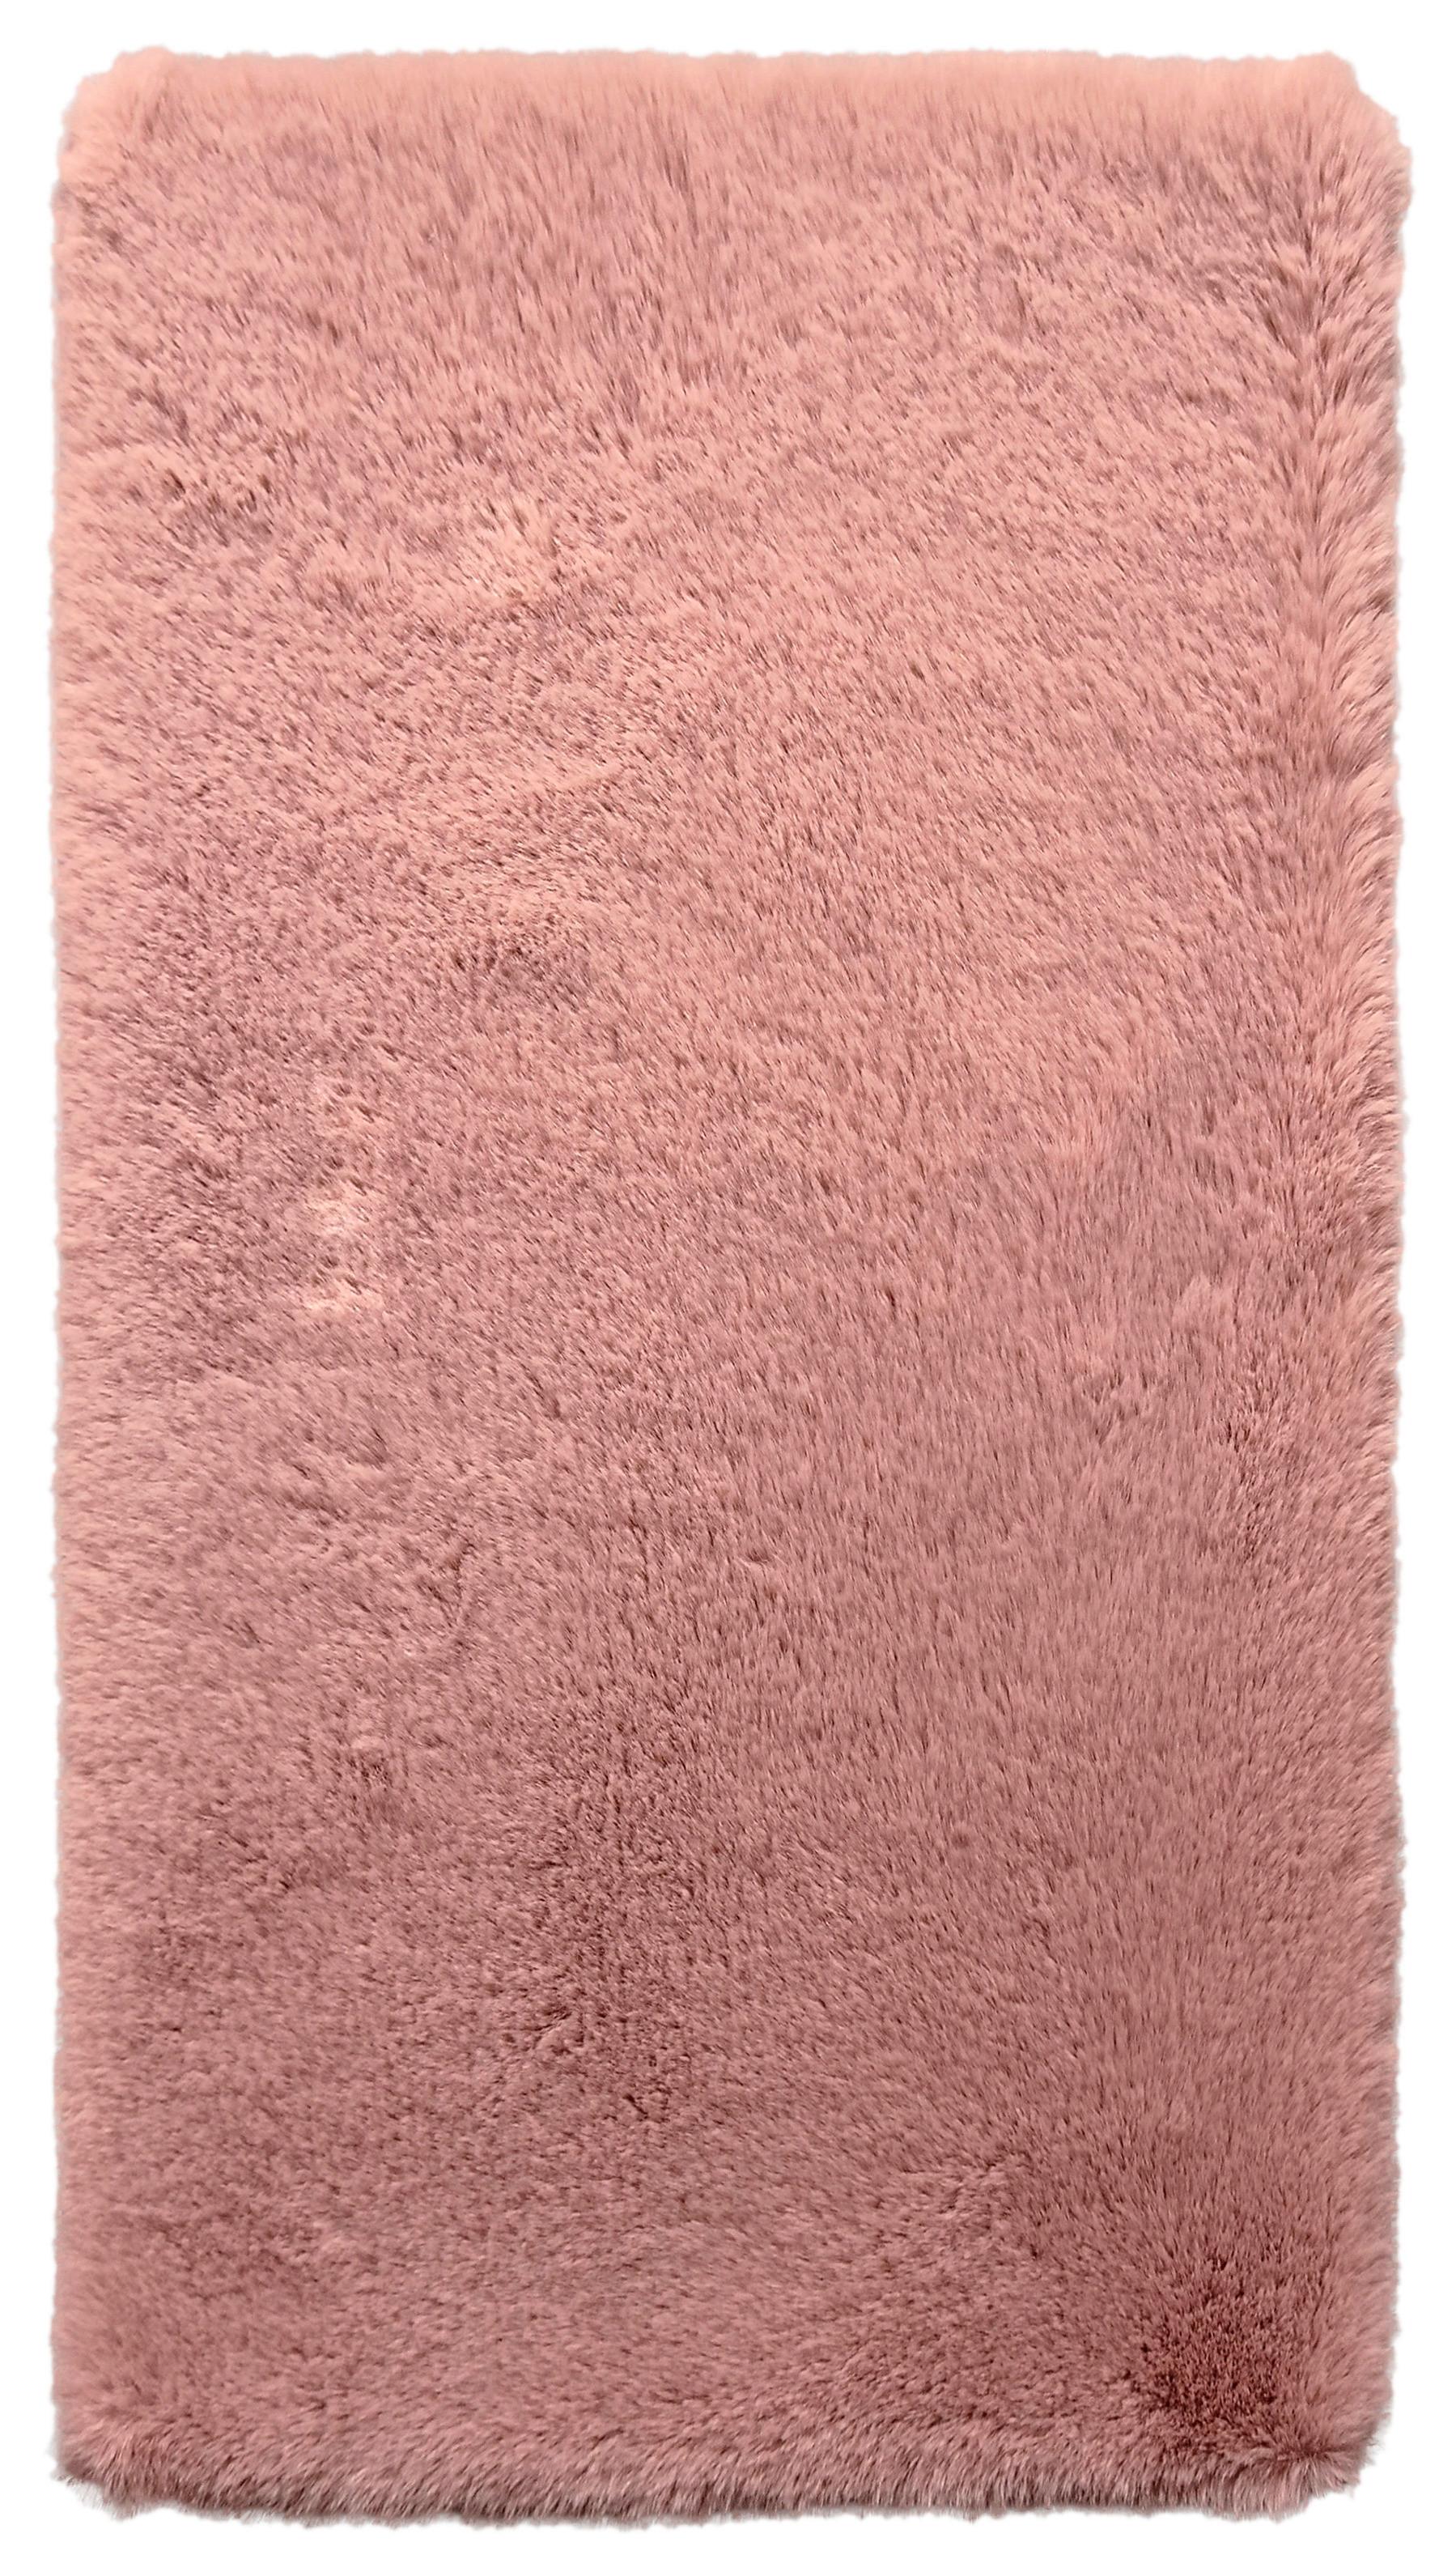 Umjetno Krzno Caroline 1 -Akt- - prljavo ružičasta, tekstil (80/150cm) - Modern Living